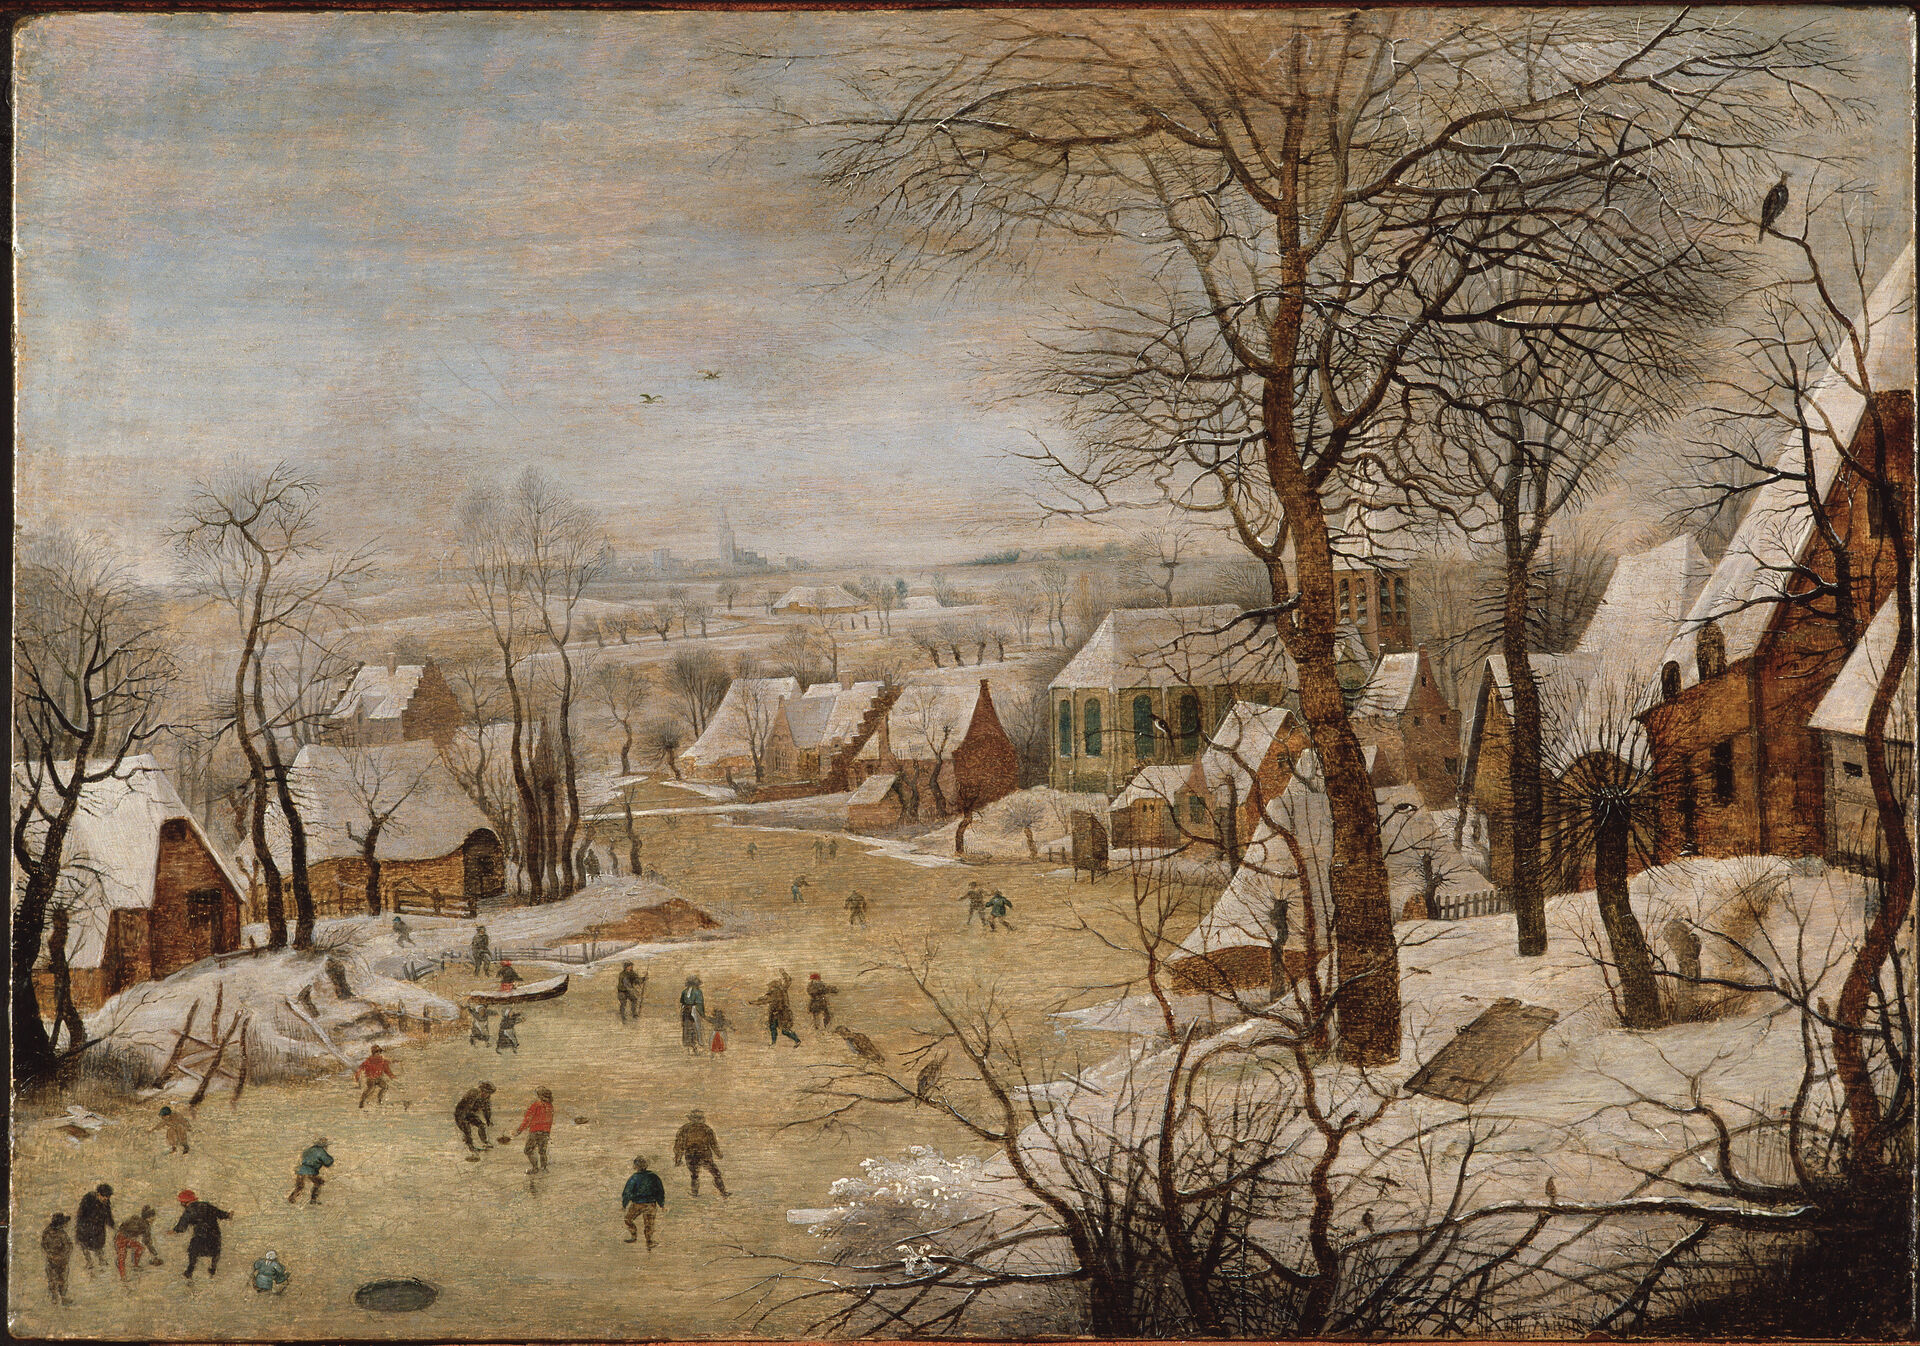 Pieter Bruegel d.y., Vinterlandskap med skridskoåkare och en fågelfälla, Olja på trä. Nationalmuseum.